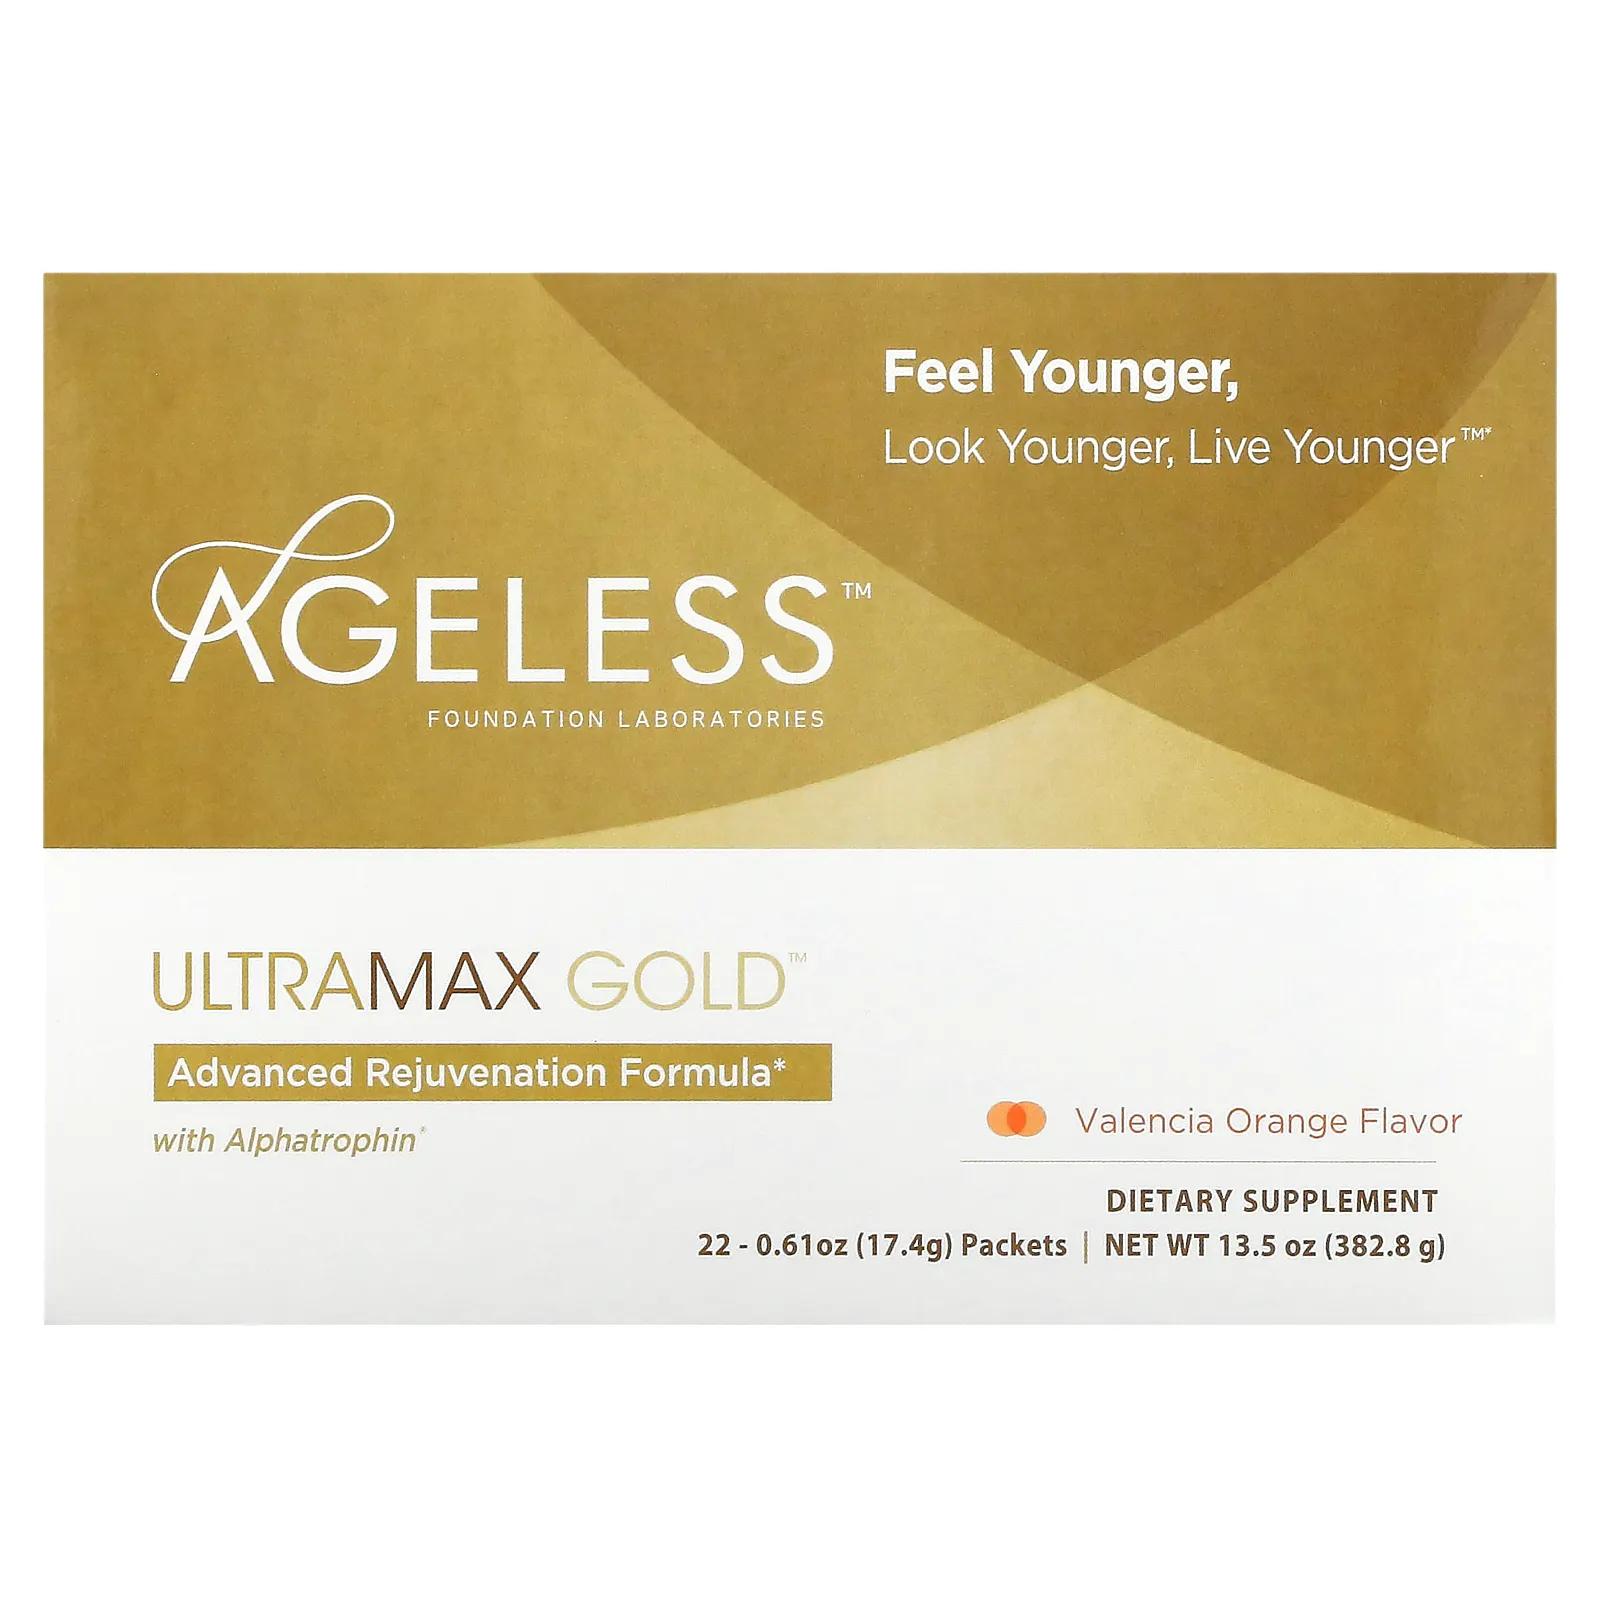 Ageless Foundation Laboratories UltraMax Gold улучшенная формула омоложения с альфатрофином со вкусом валенсийского апельсина 22 пакетика 13,5 унции (17,4 г) каждый